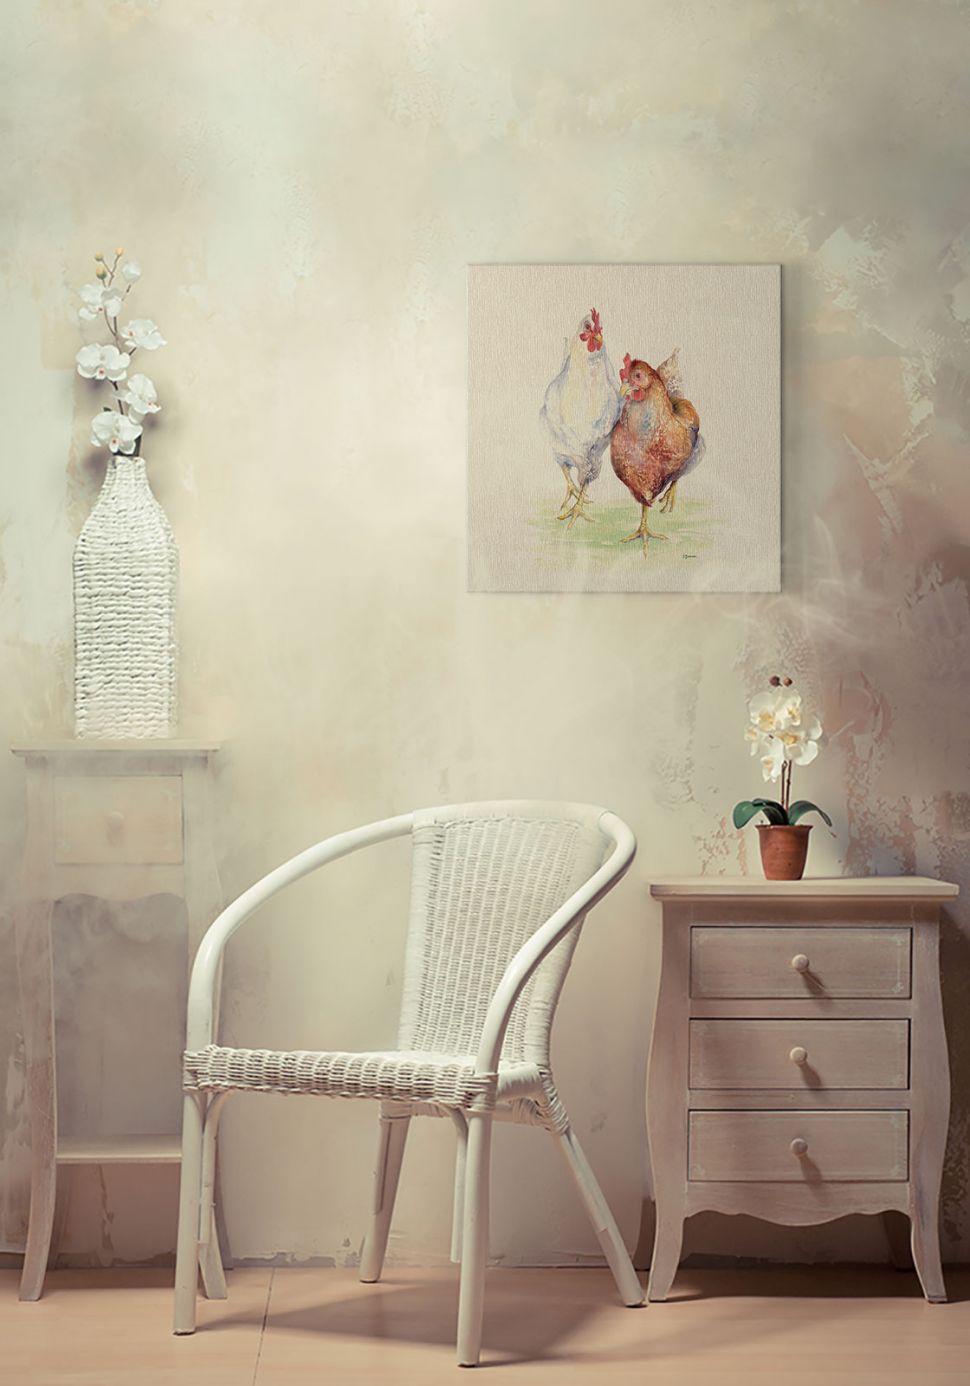 Obraz na płótnie Ethel & Mabel wiszący w pokoju nad białym wiklinowym krzesłem